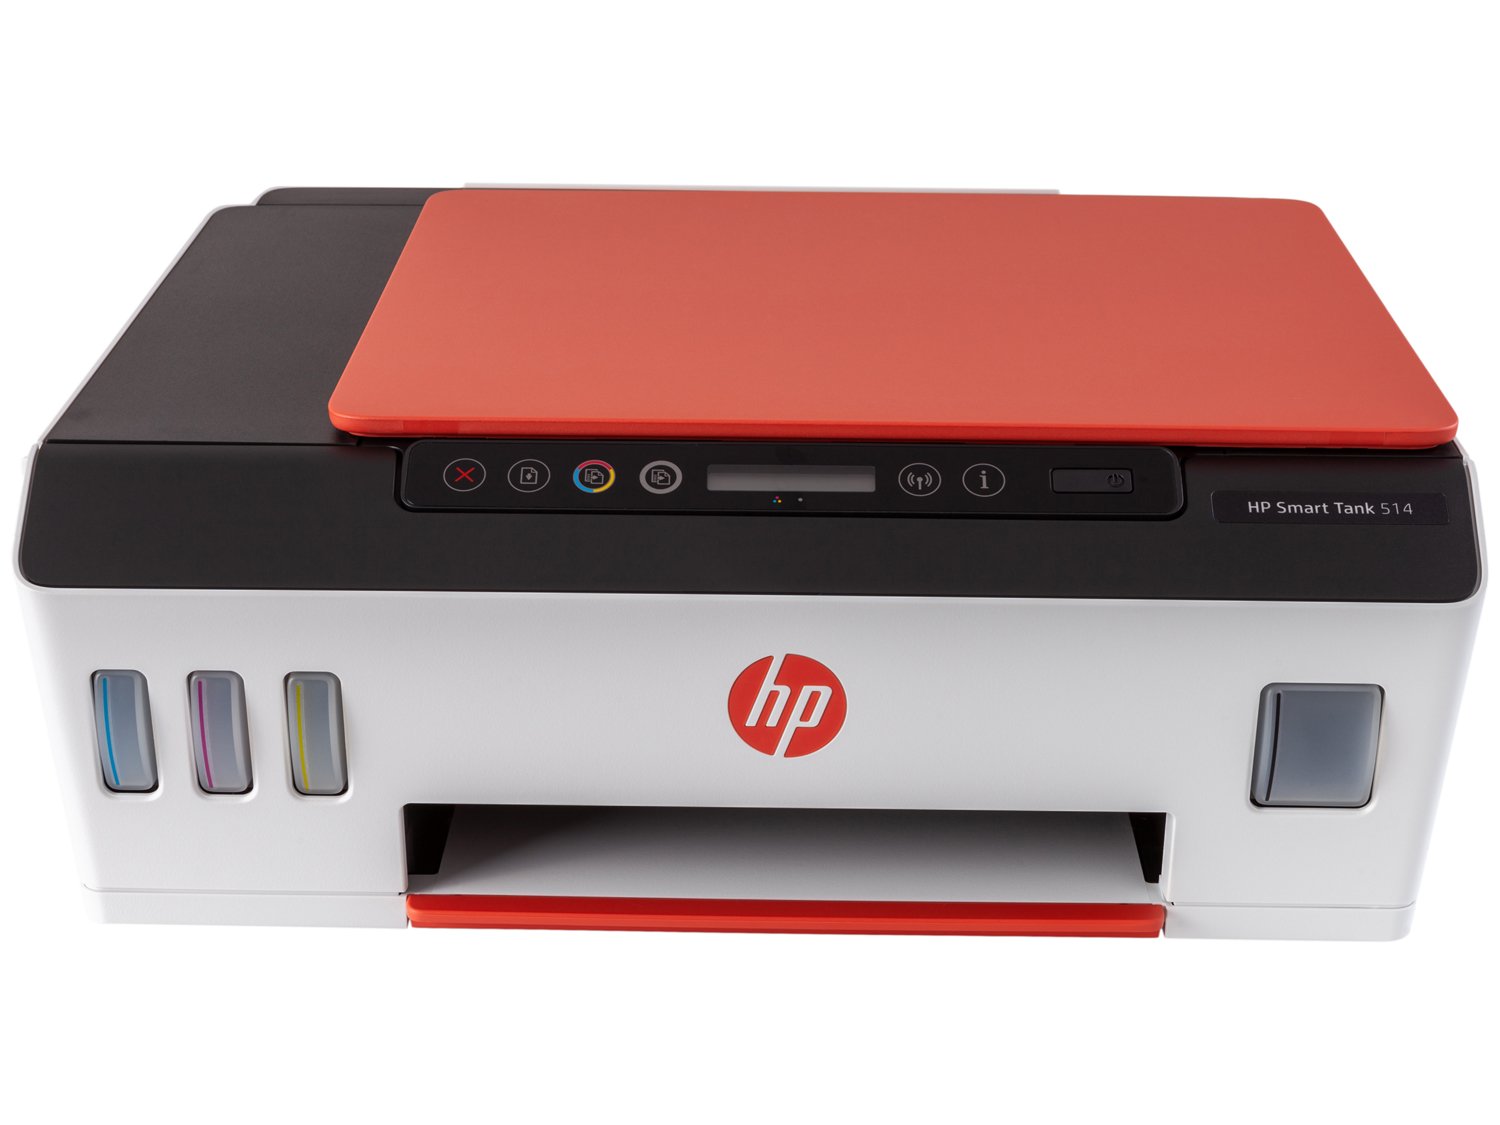 Impressora Multifuncional HP Smart Tank 514 - Tanque de Tinta Colorida Wi-Fi USB - Bivolt - 4